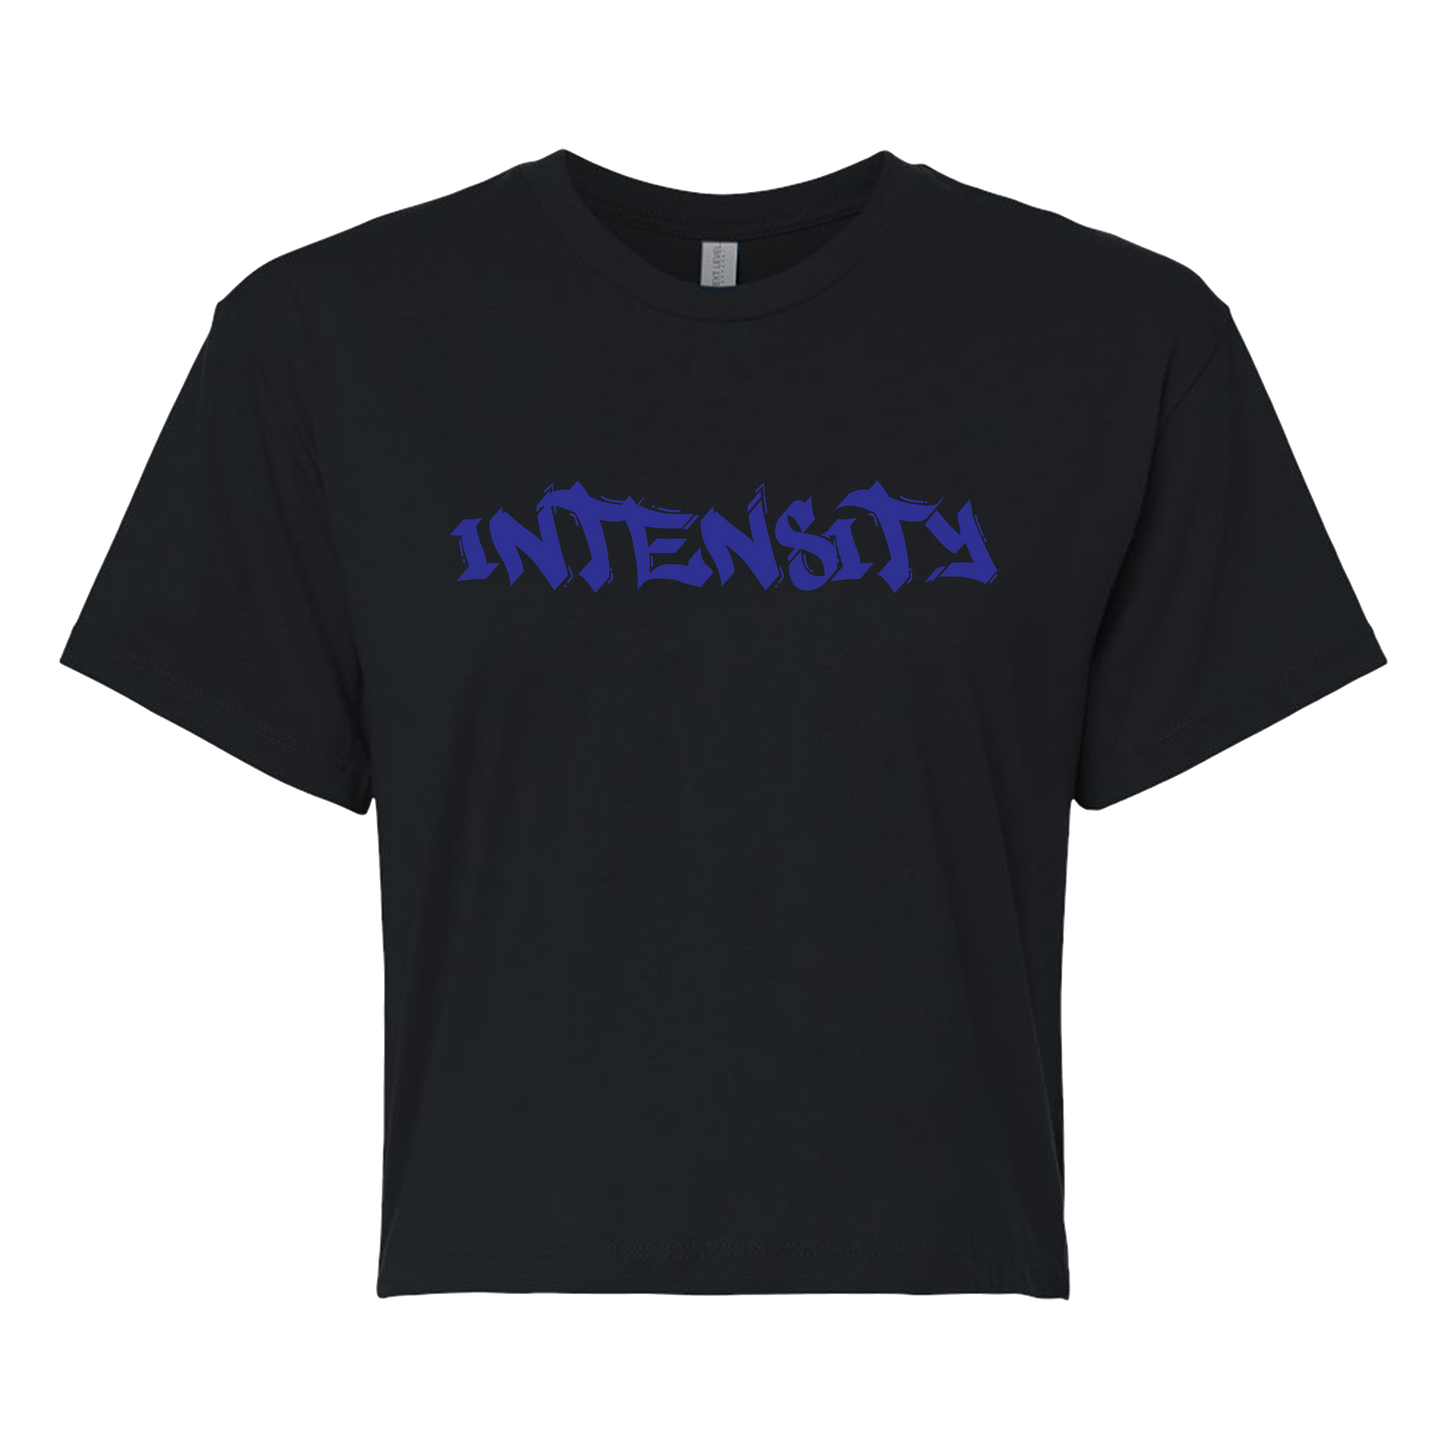 Women's "INTENSITY" Solid Black Crop Top T-Shirt